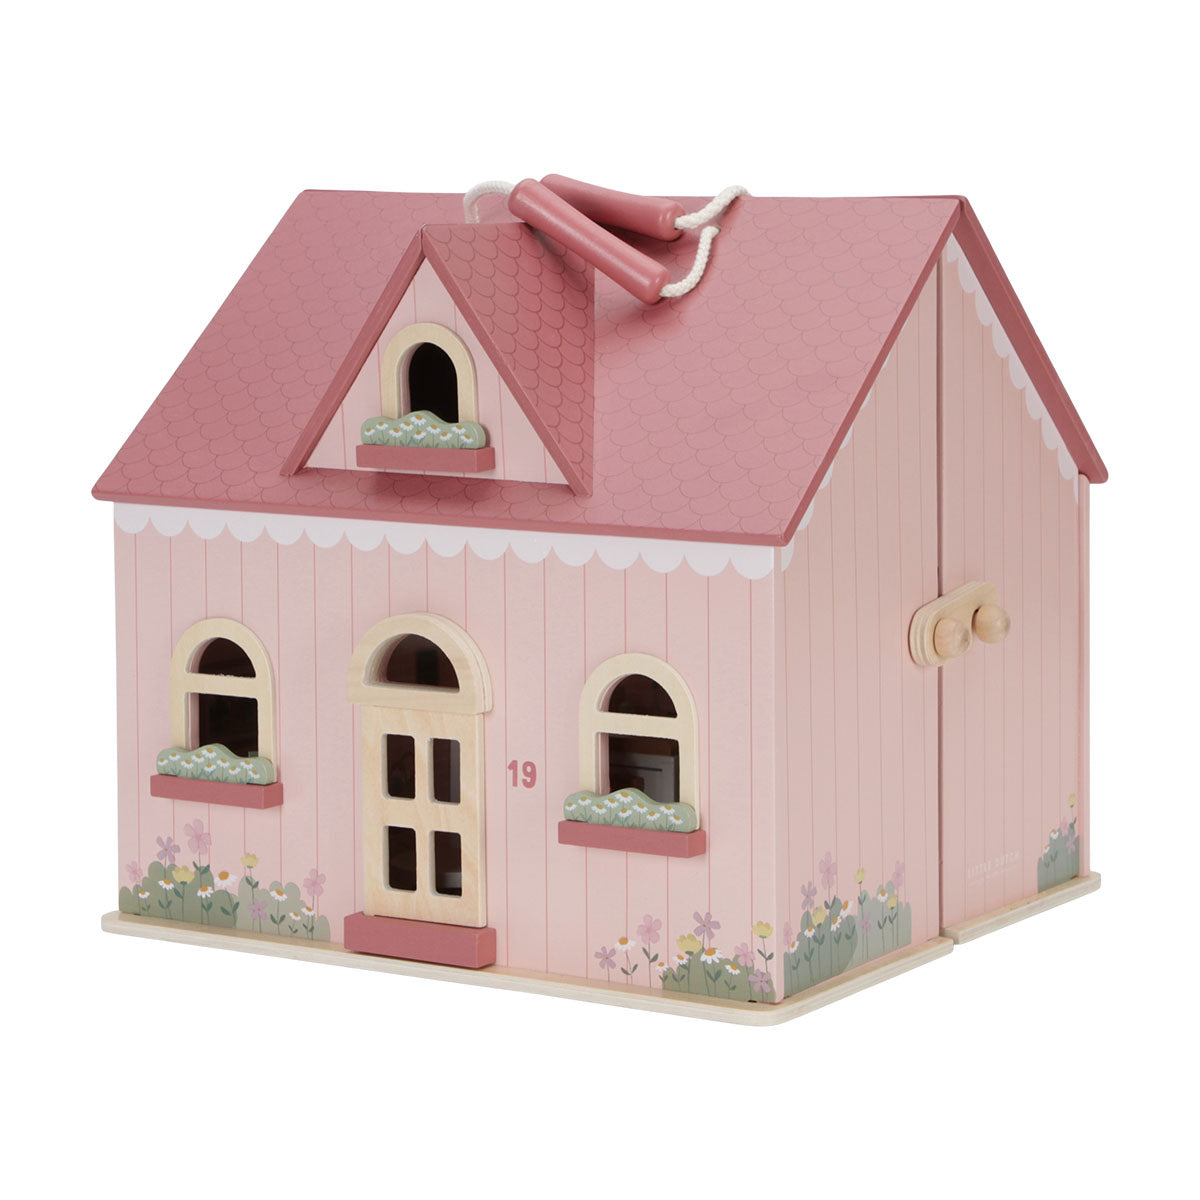 Liefhebbers van poppen opgelet! Dit superleuke Little Dutch houten poppenhuis klein is een must have voor iedereen die graag met zijn of haar poppen speelt! Dit kleine poppenhuis ziet er ontzettend leuk uit. VanZus